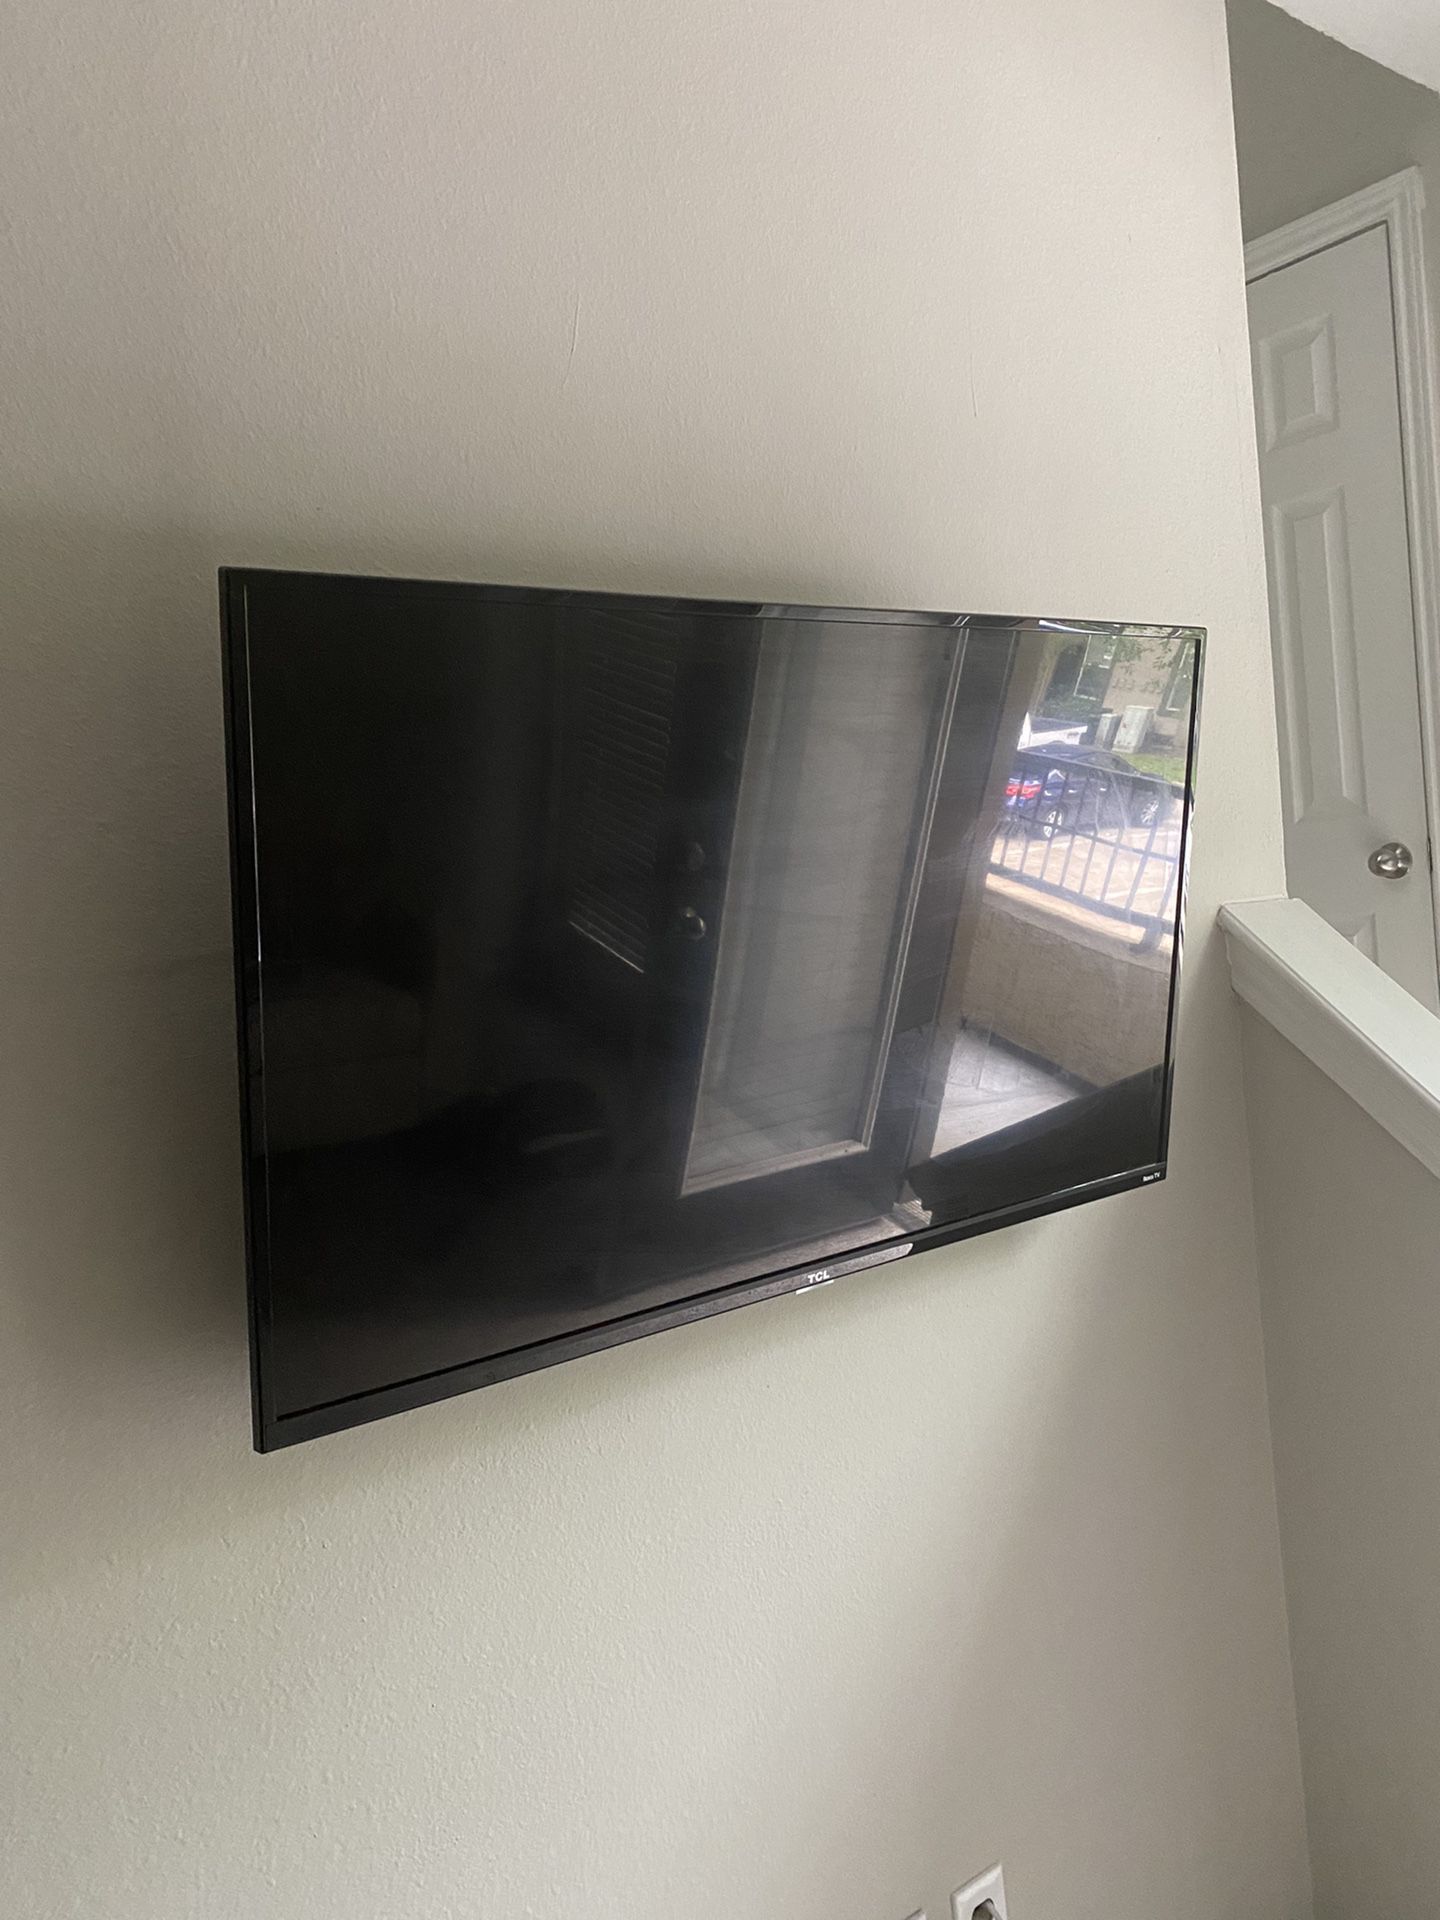 43 inch smart Tv - Roku